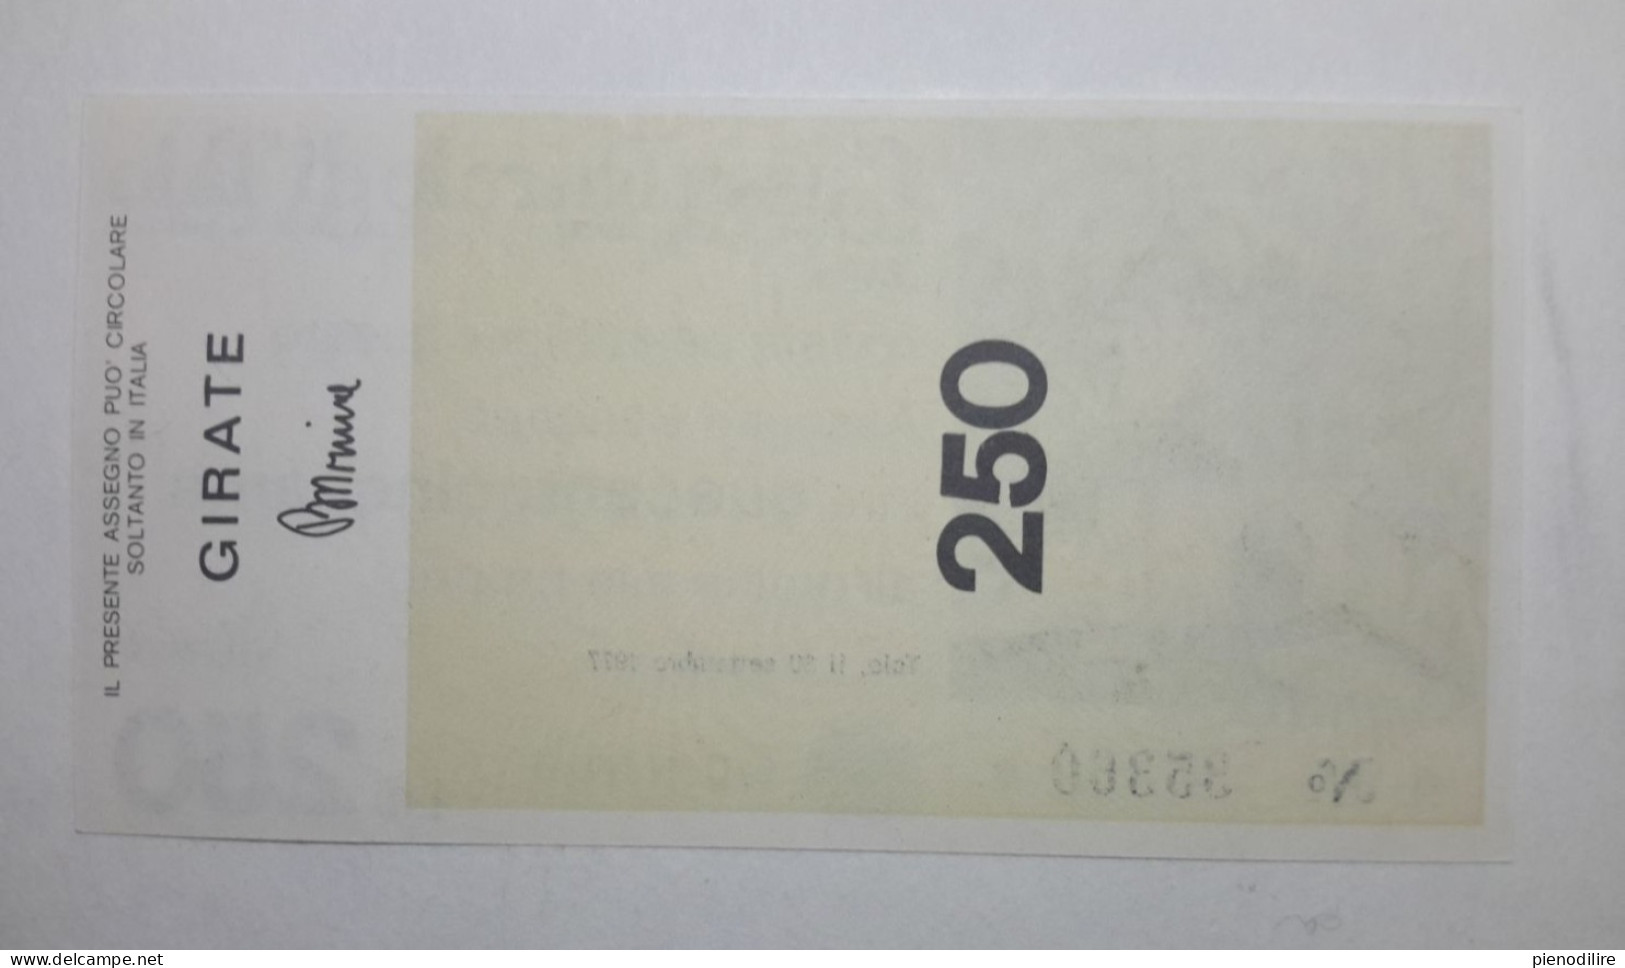 CASSA RURALE DI TAIO 250 LIRE 30.09.1977 MIO PROPRIO (A.32) - [10] Cheques En Mini-cheques